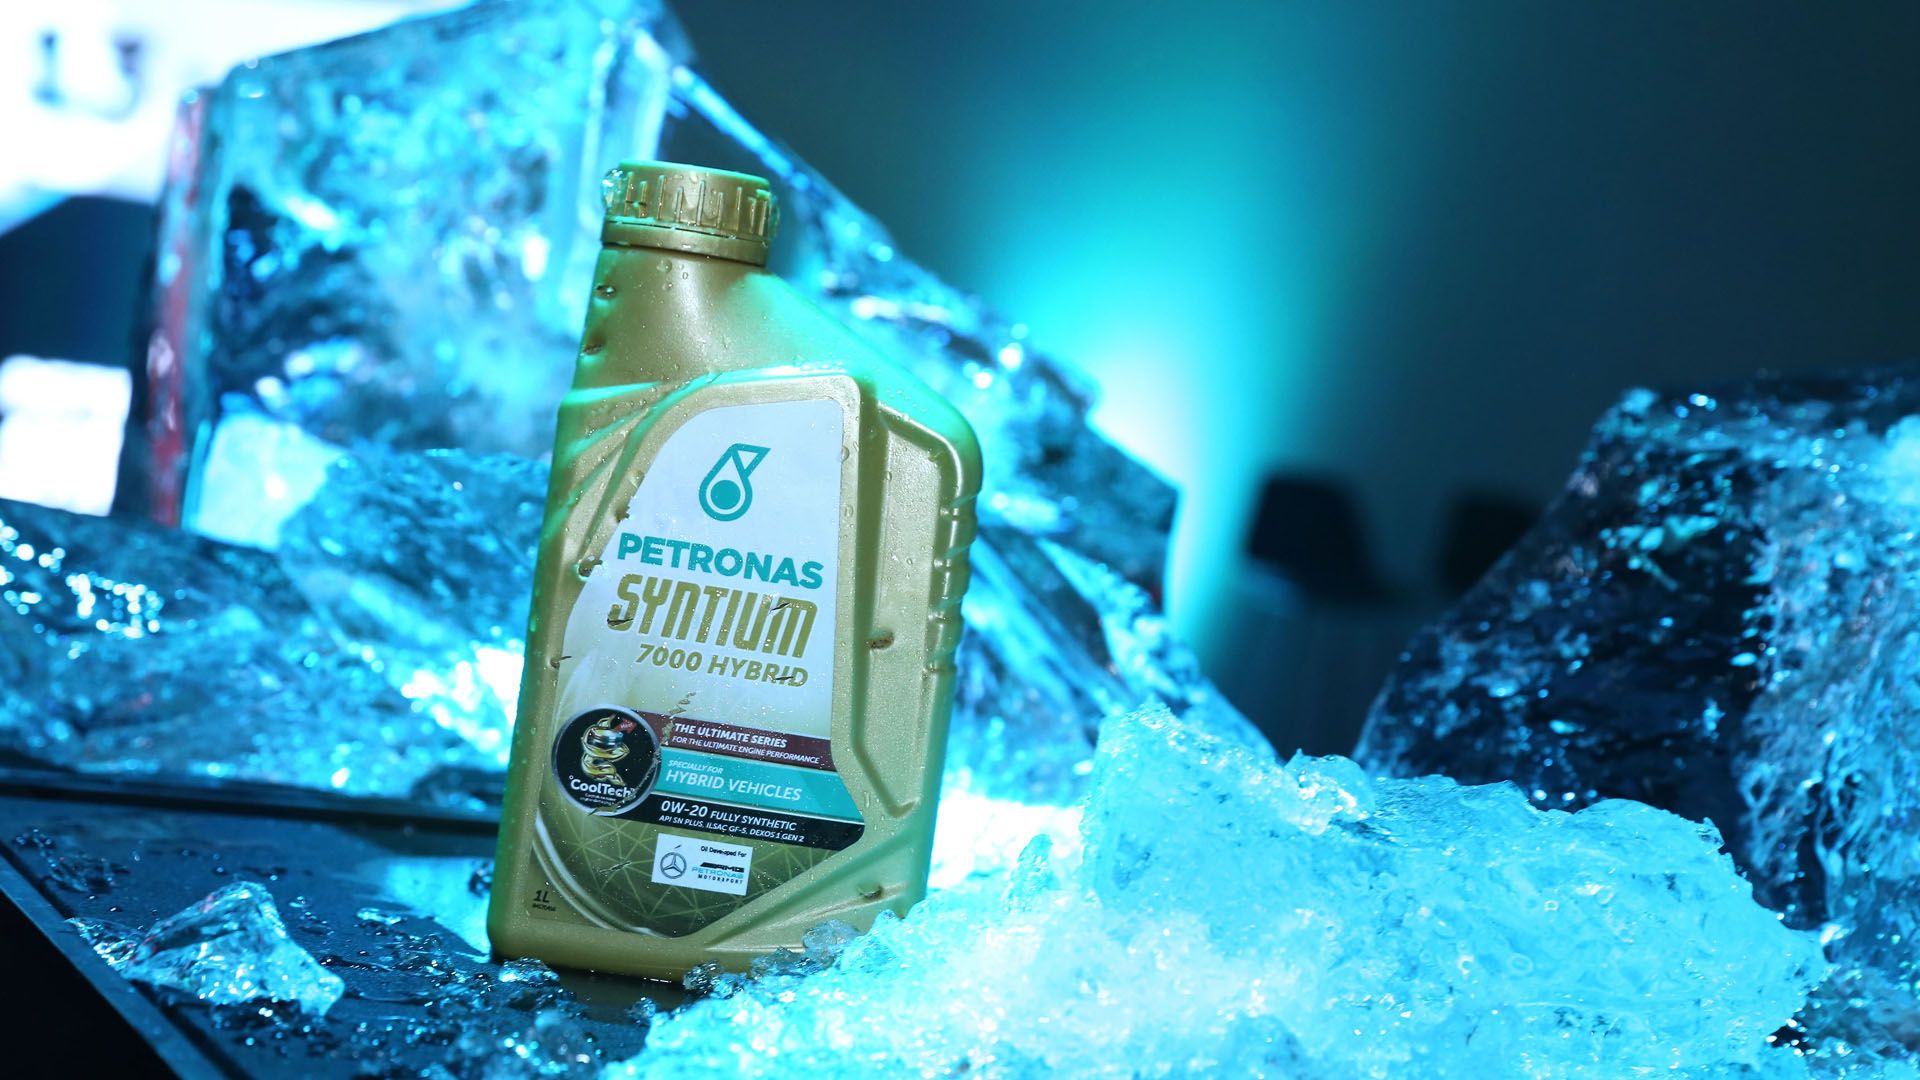 Parabrisas  Petronas lanzó su nueva línea de lubricantes Syntium